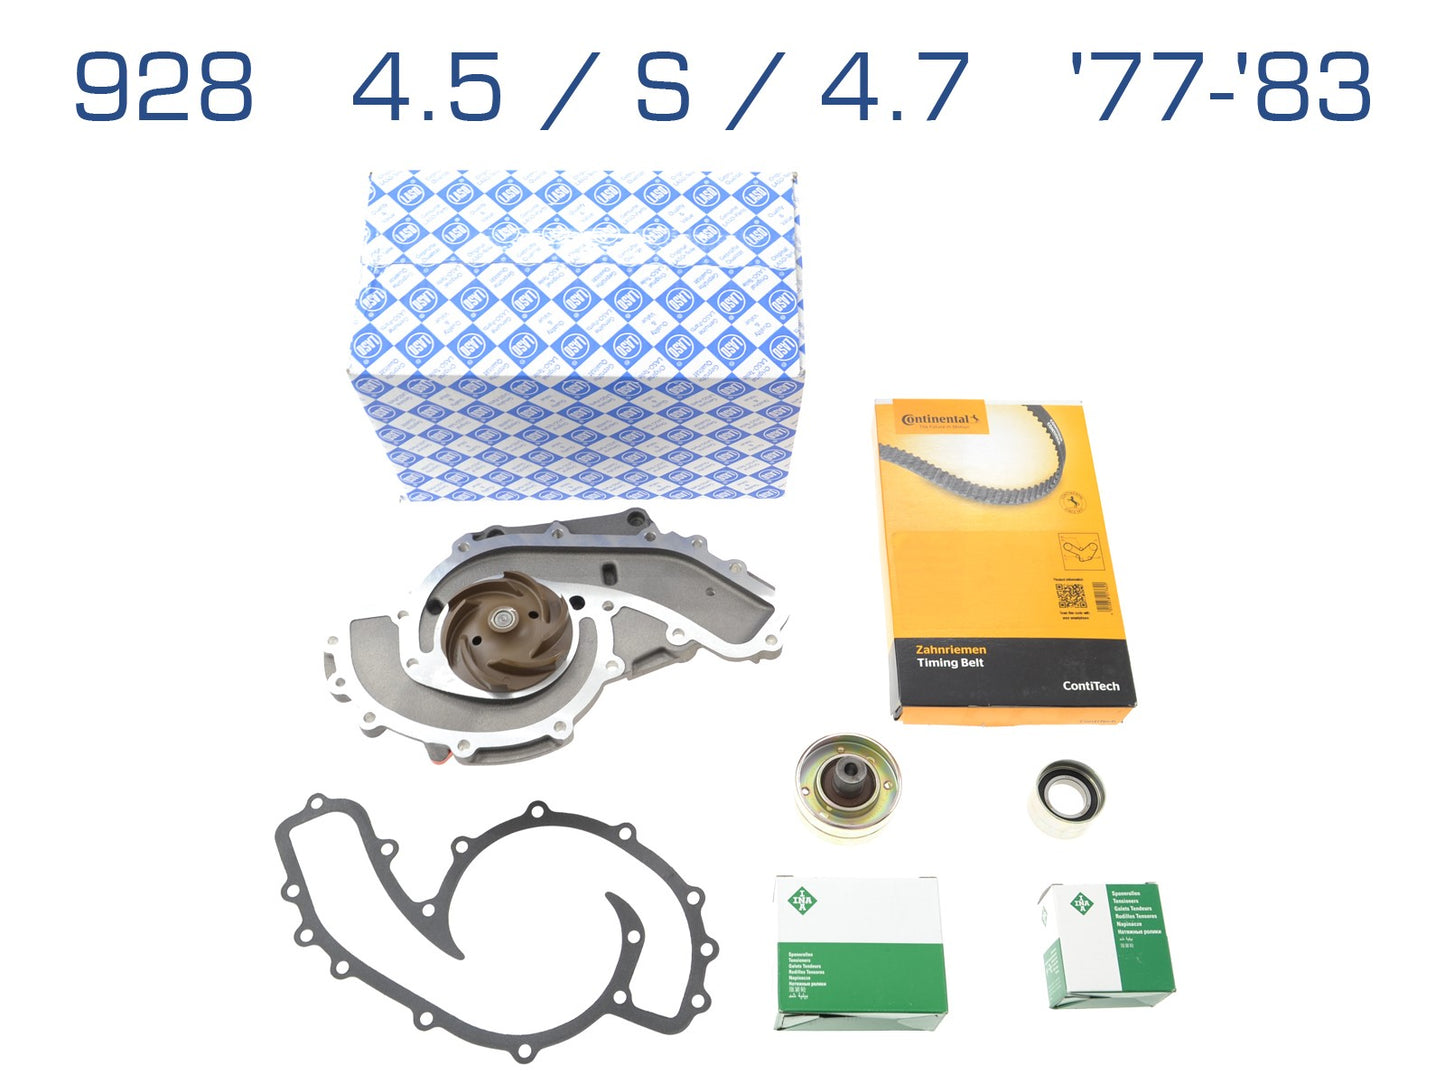 Water pump + timing belt for Porsche 928 4.5 S 4.7 '77-'83  92810515700